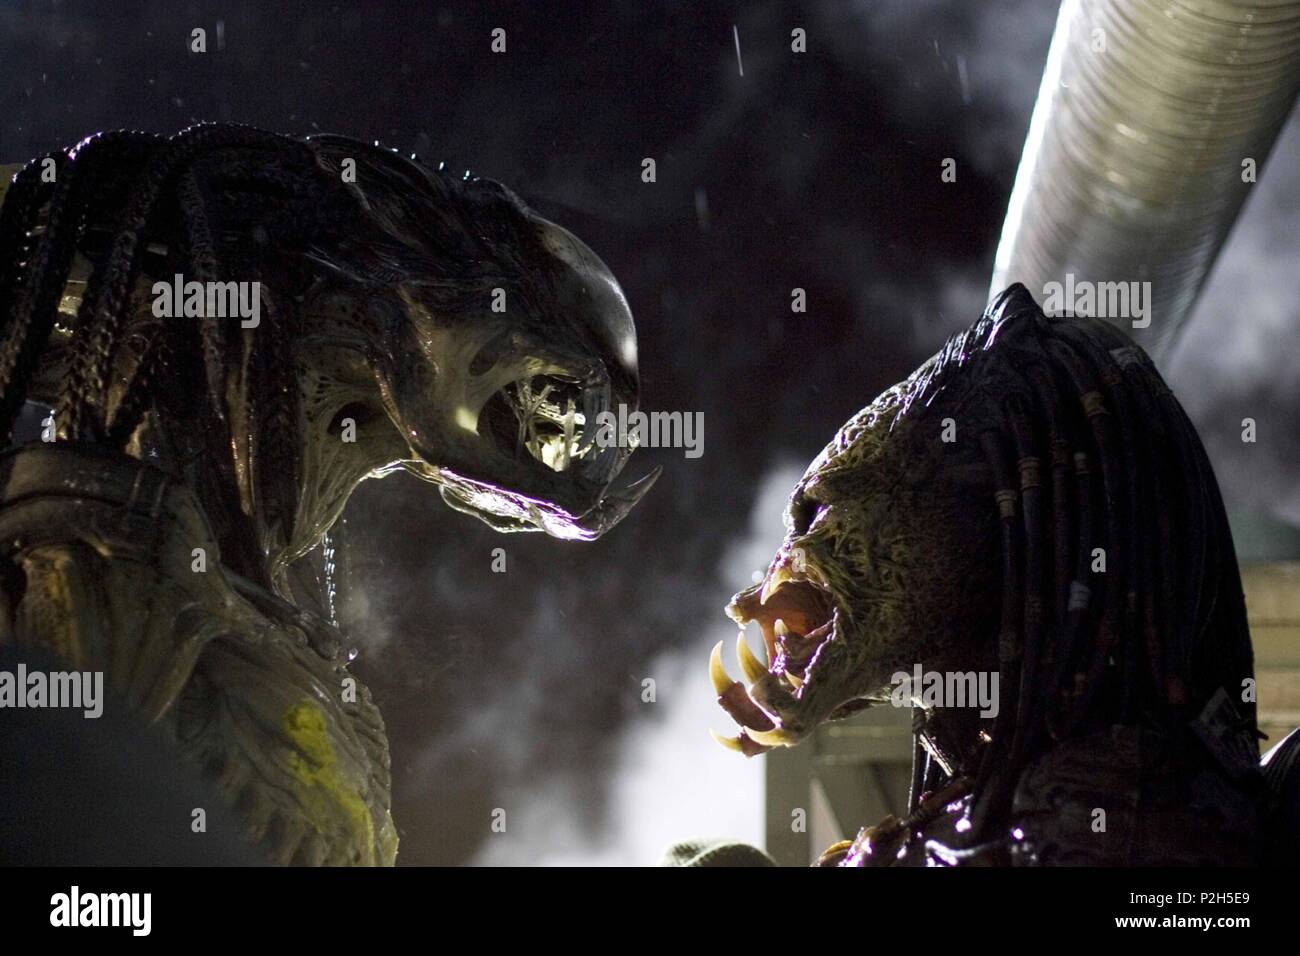 Alien vs. Predator (2004) - IMDb